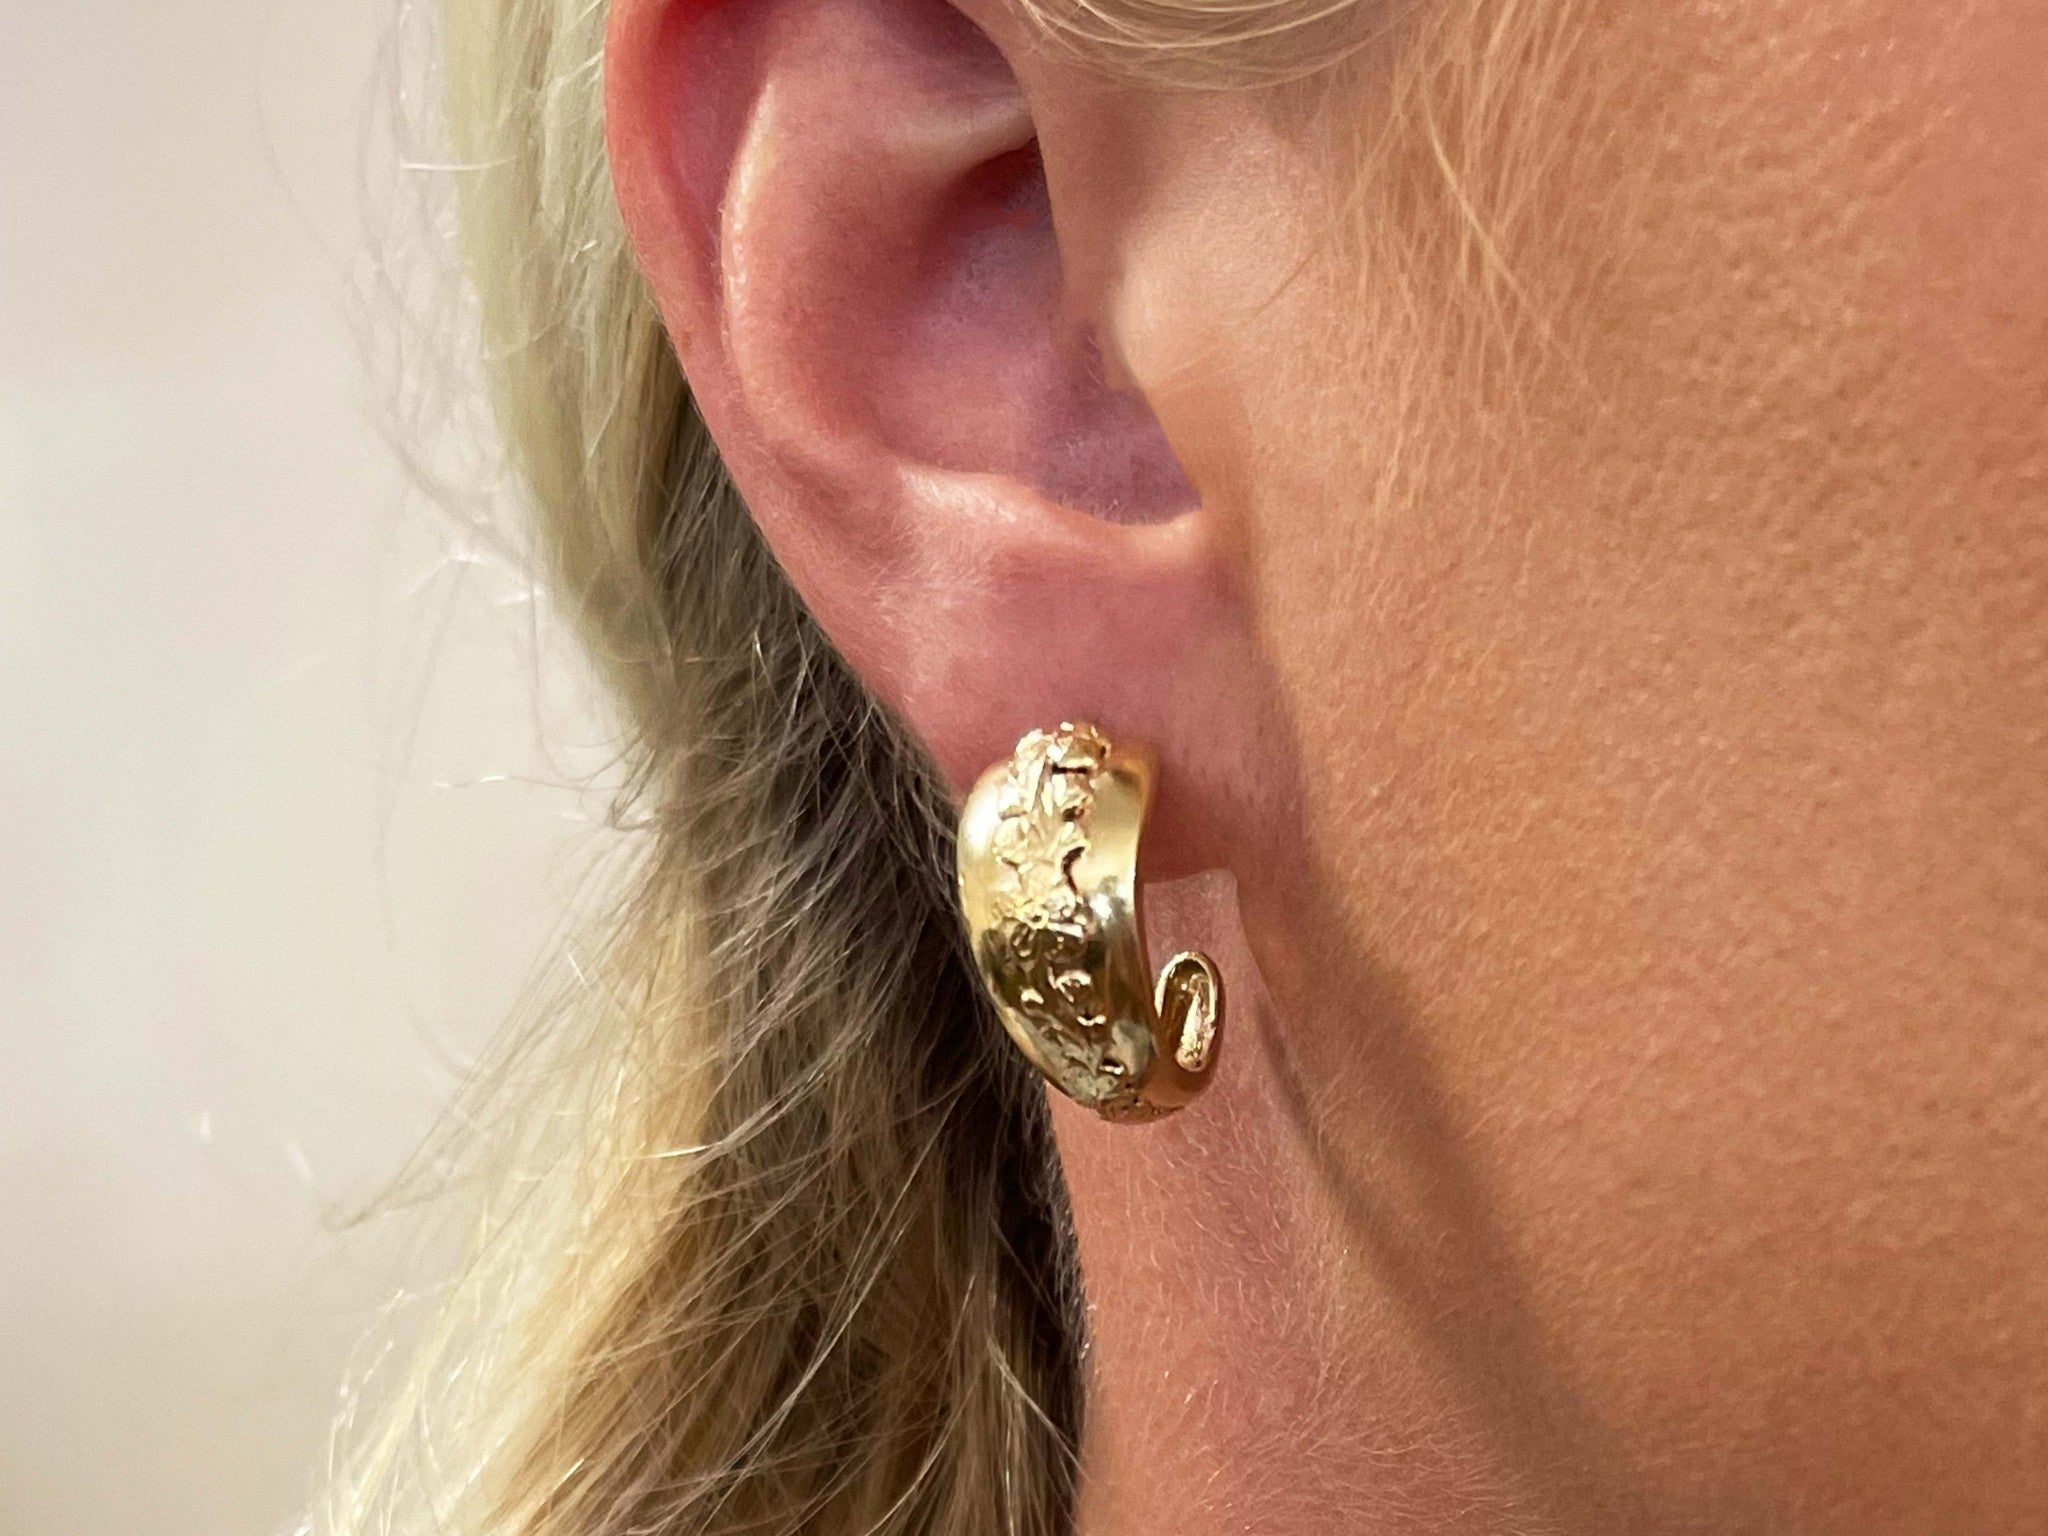 Mings Hawaii Plum Blossom Flower Half Hoop Earrings in 14k Yellow Gold